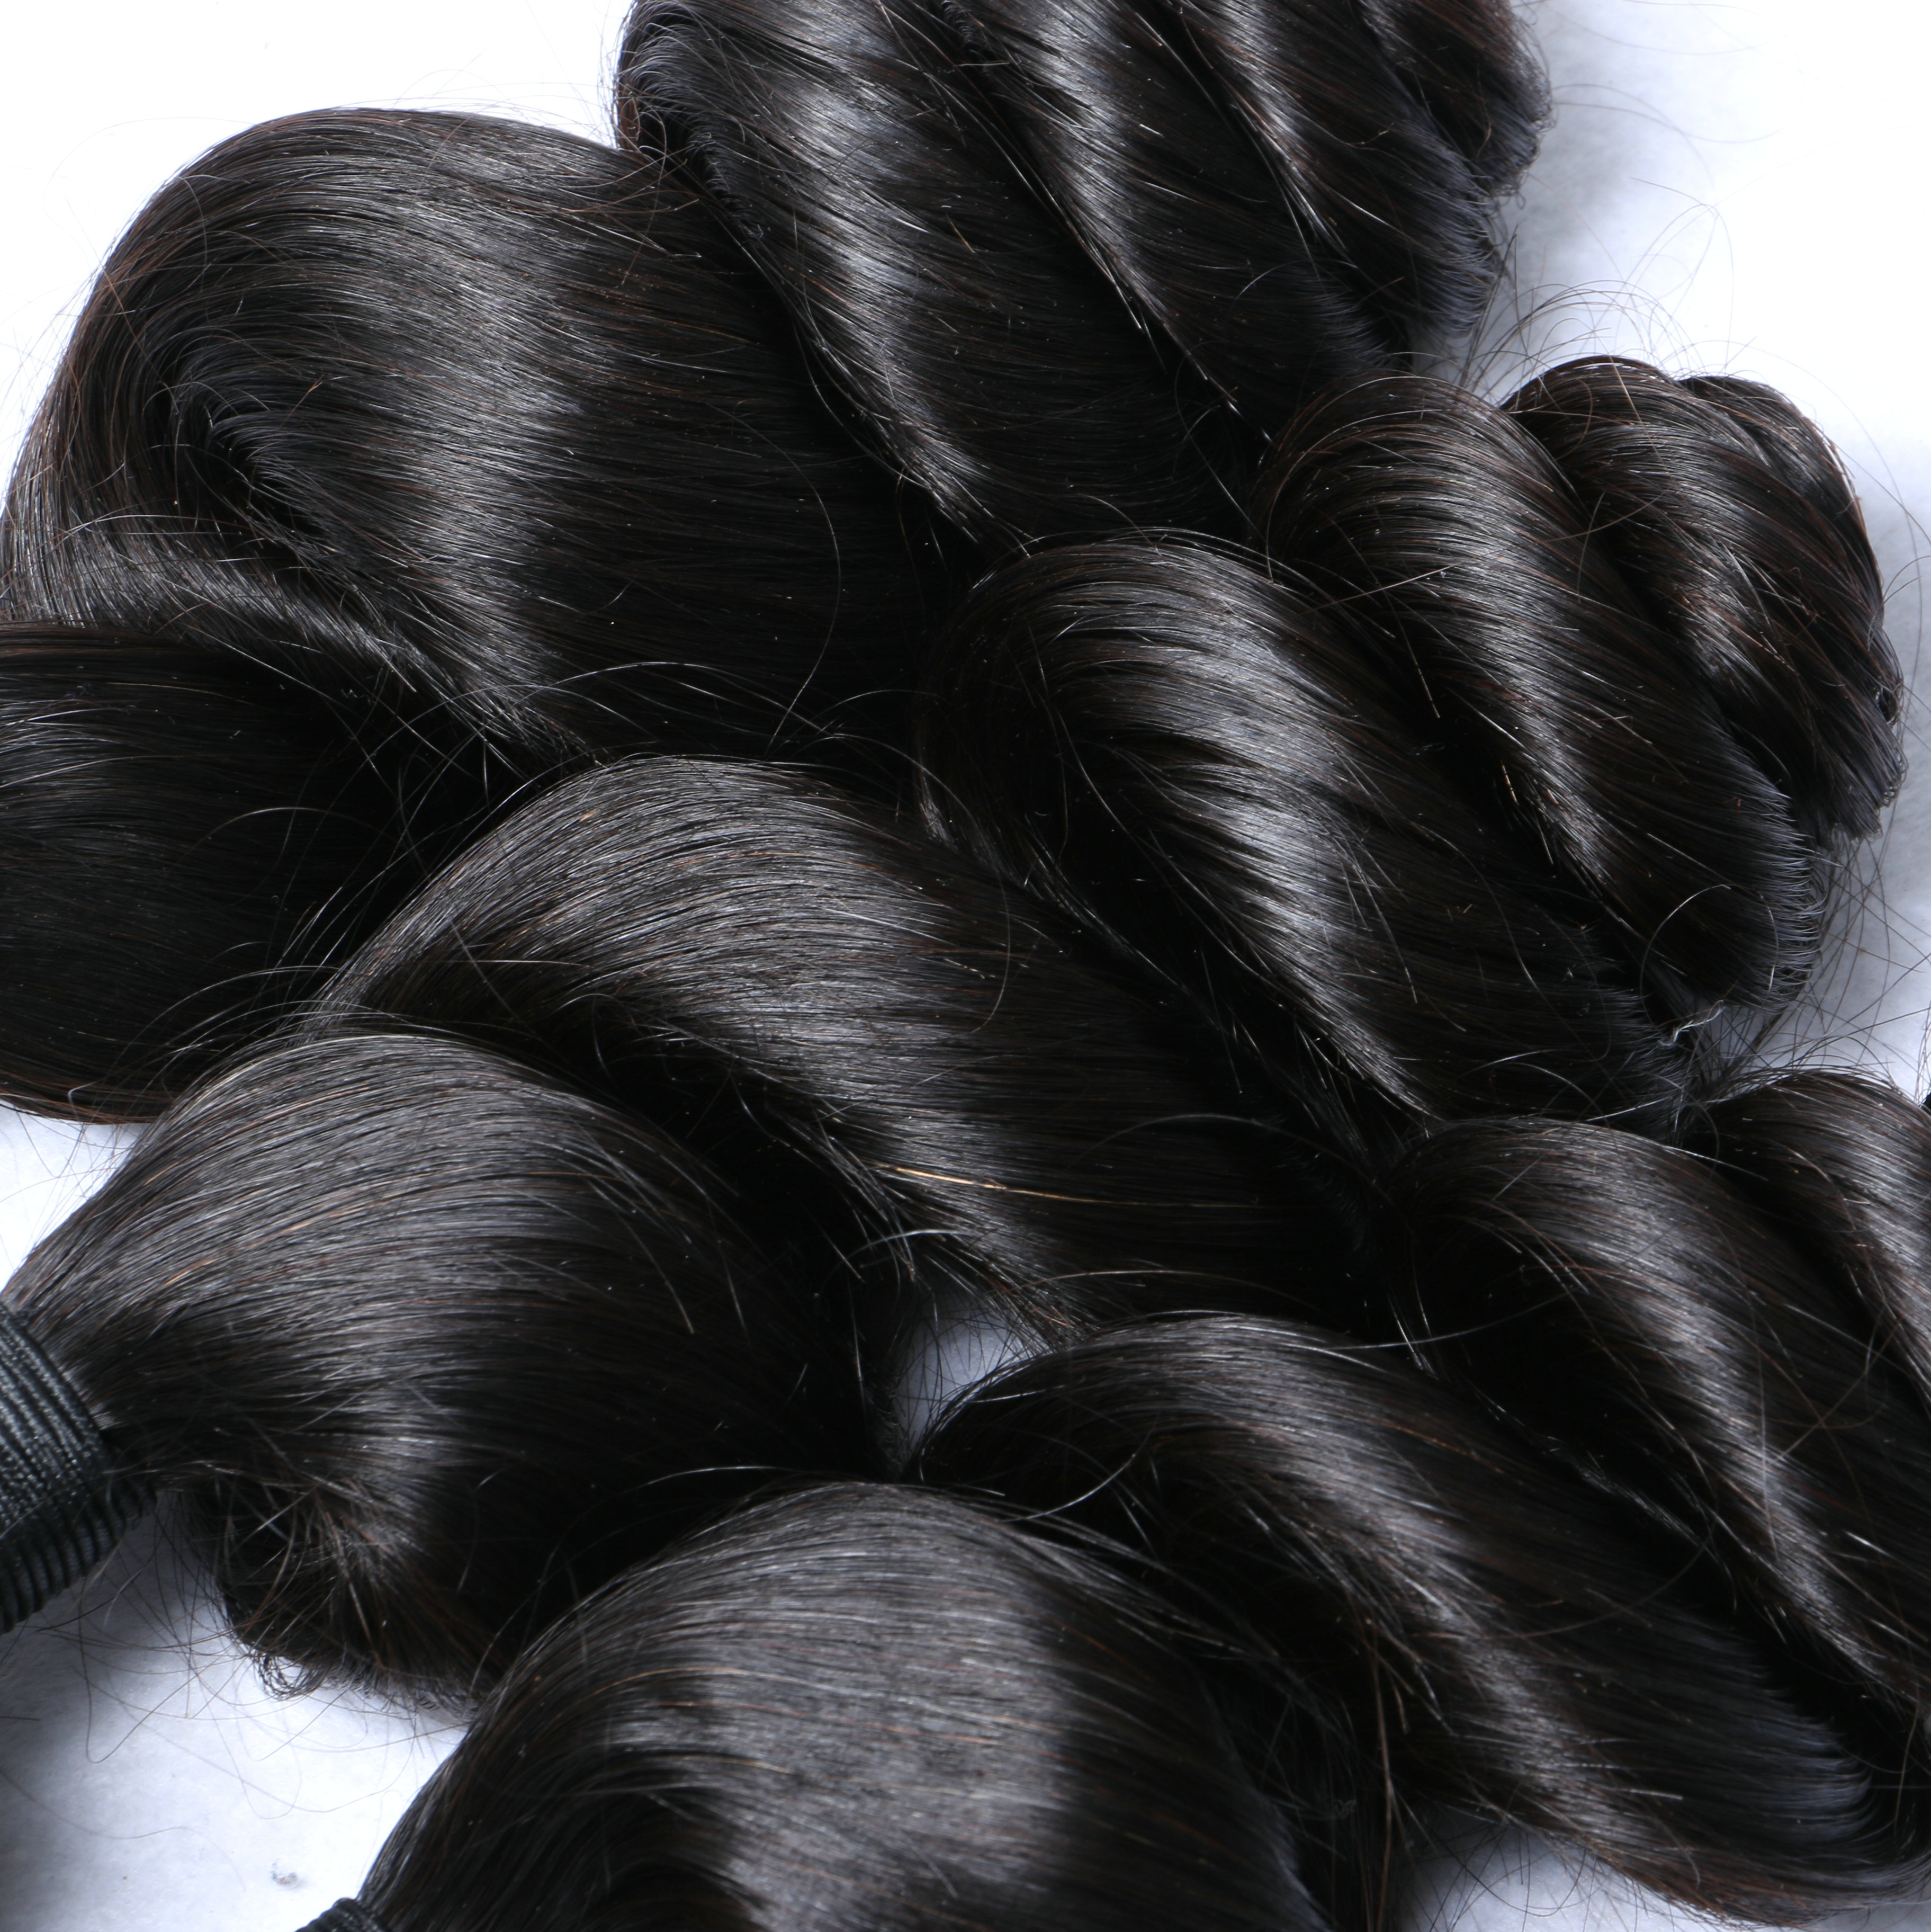 Best brazilian hair extensions hair bundle deals human hair weave HN124